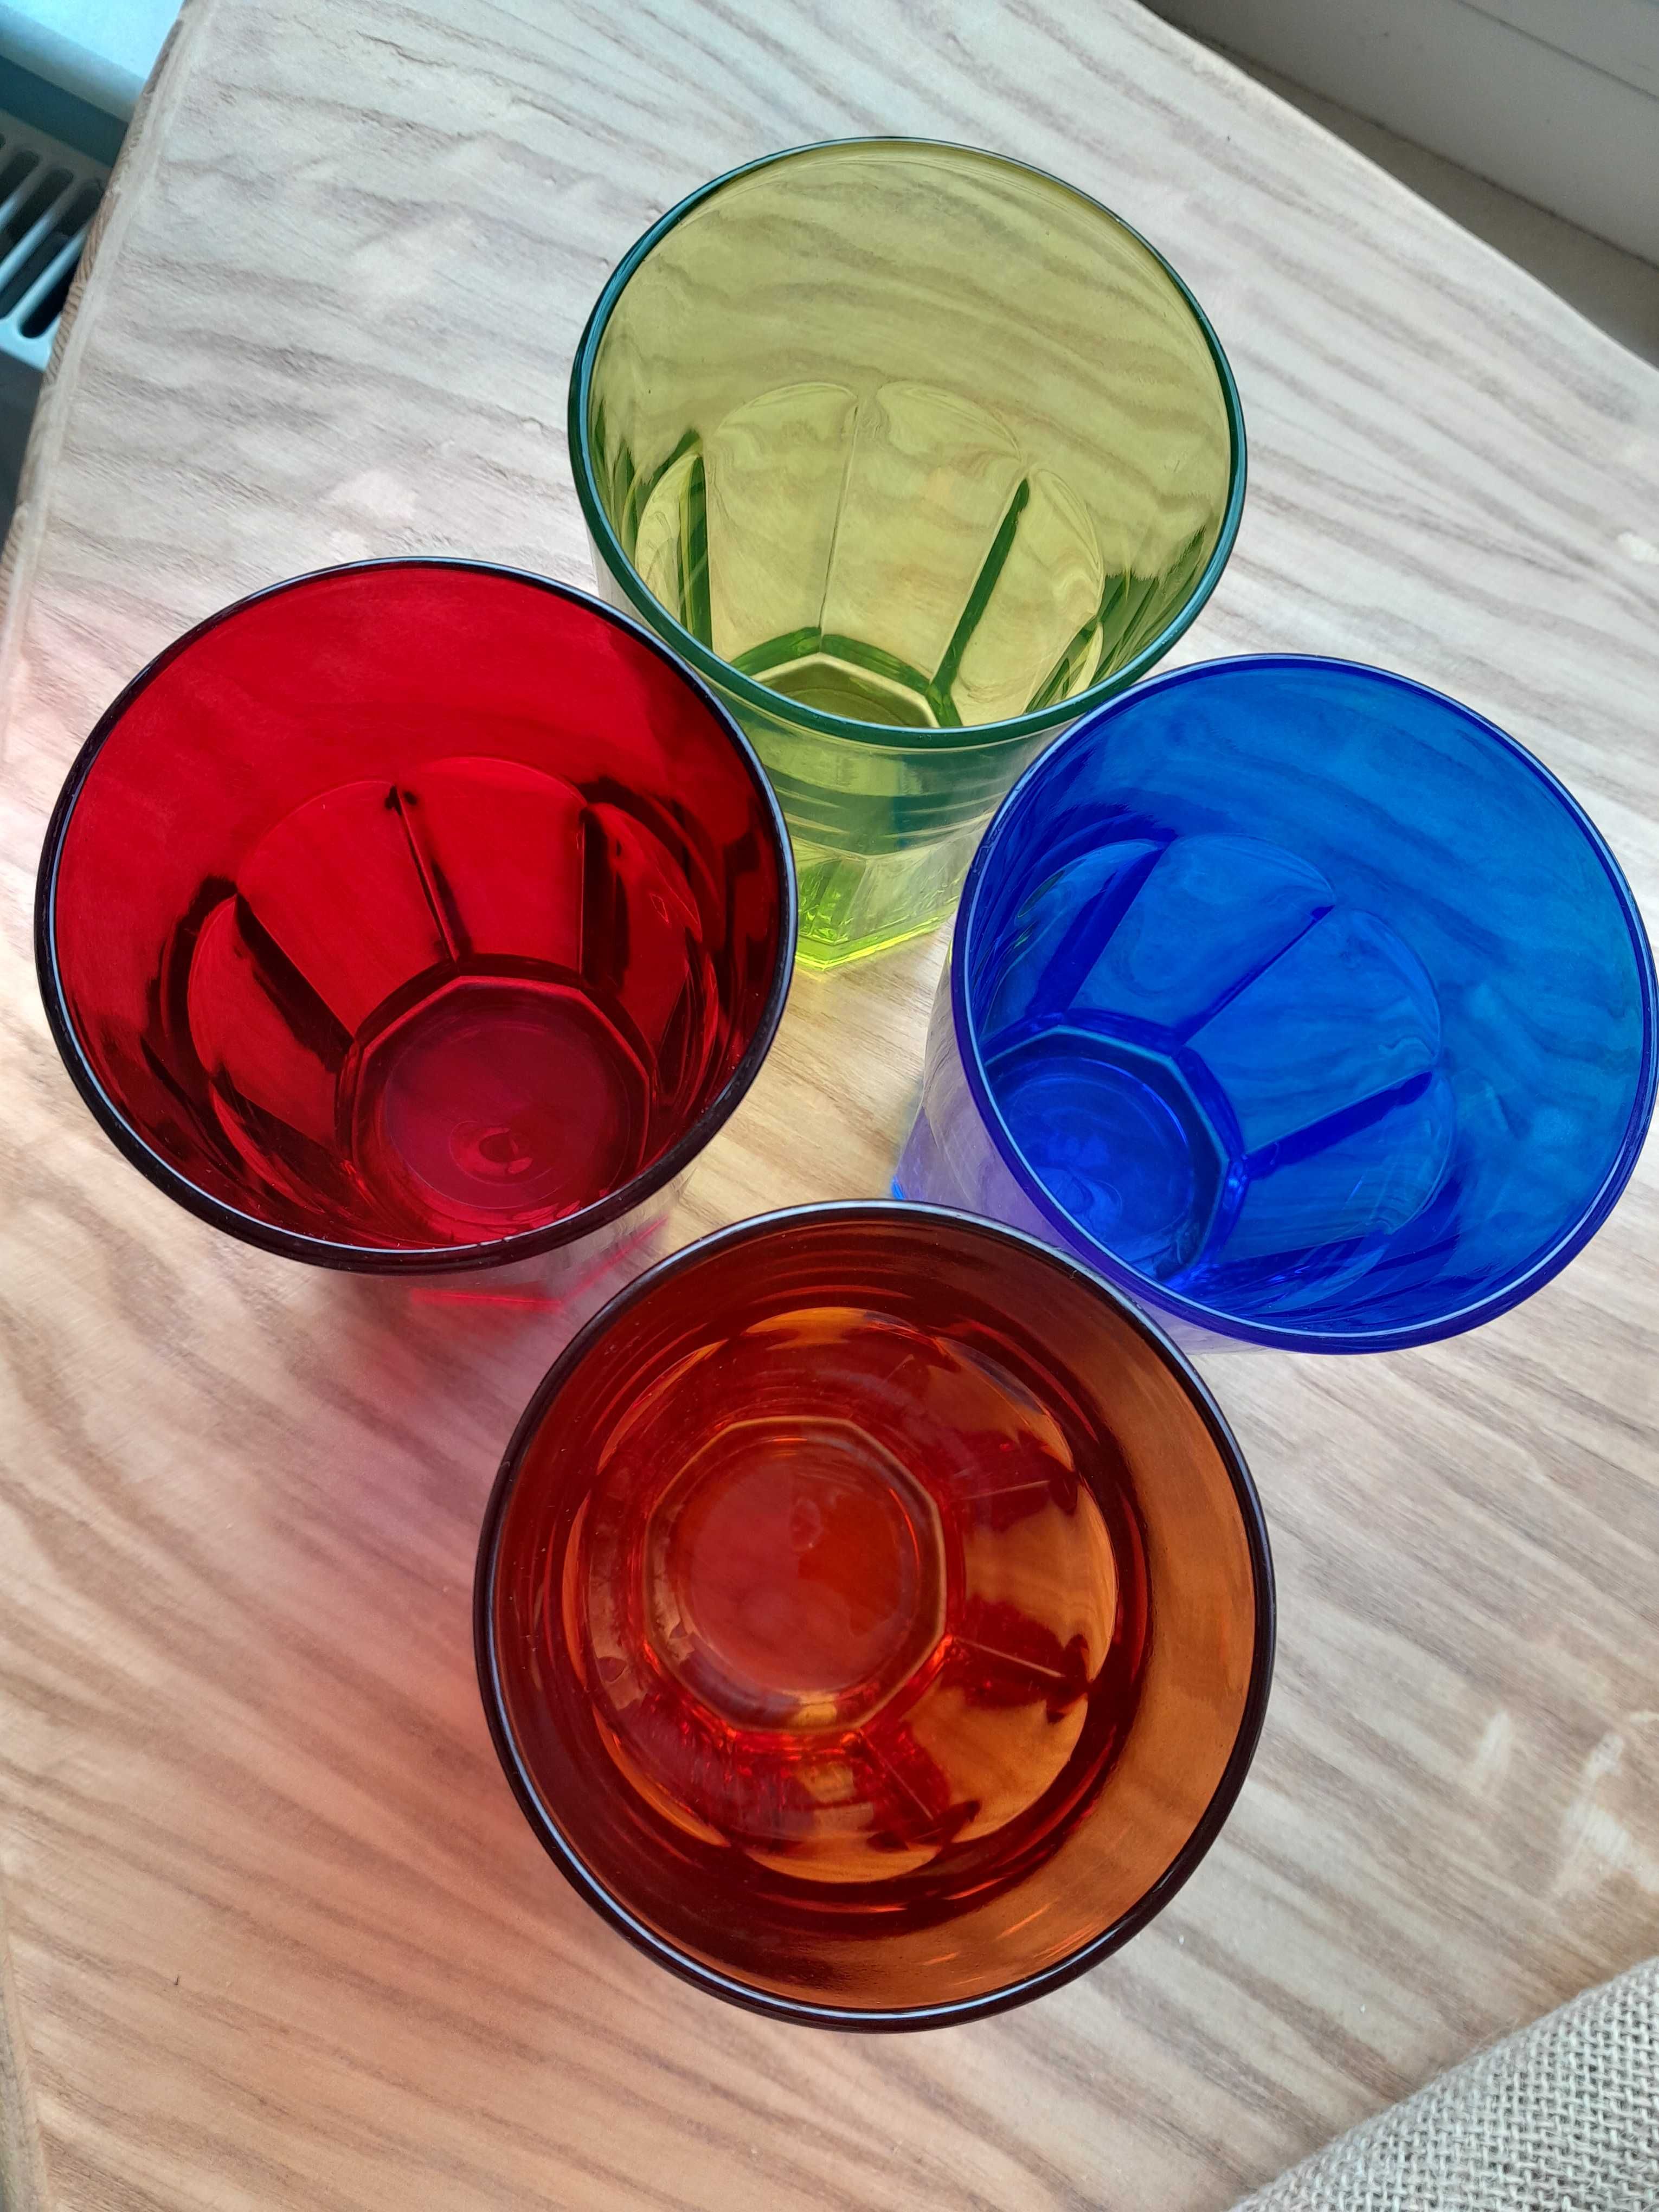 16 pahare colorate pentru apa,limonada,365ml